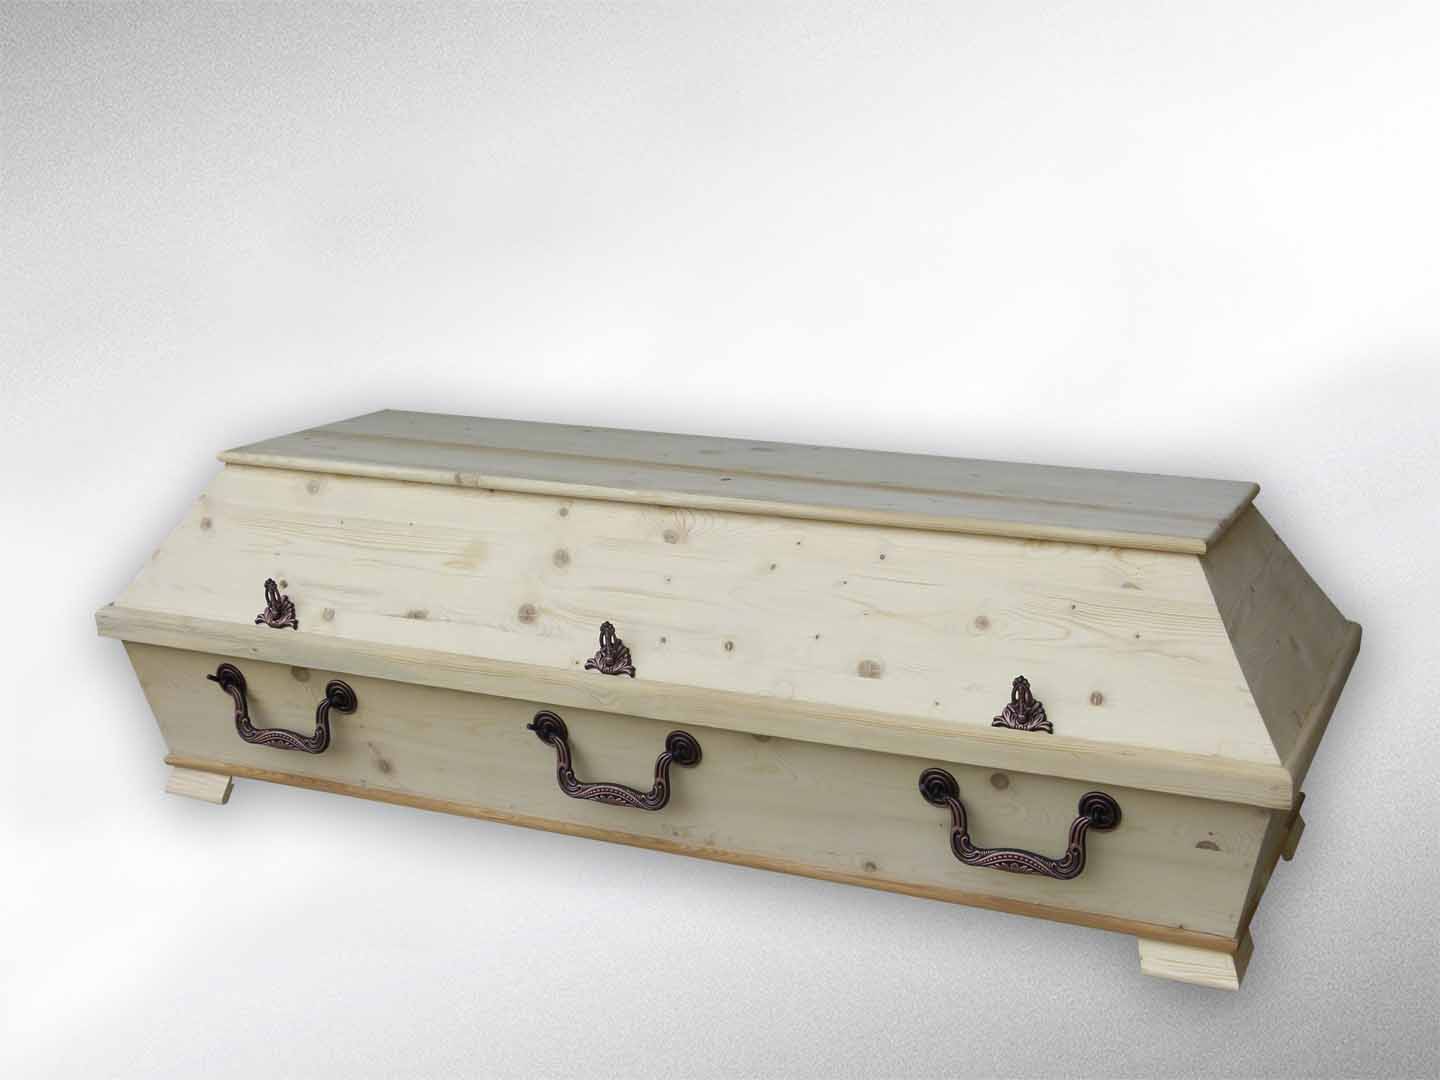 Kremationssarg, XXL 78 cm roh, astig, „Deckel glatt“, erhöhtes Unterteil (ca. 6cm), inkl. Innenausschlag